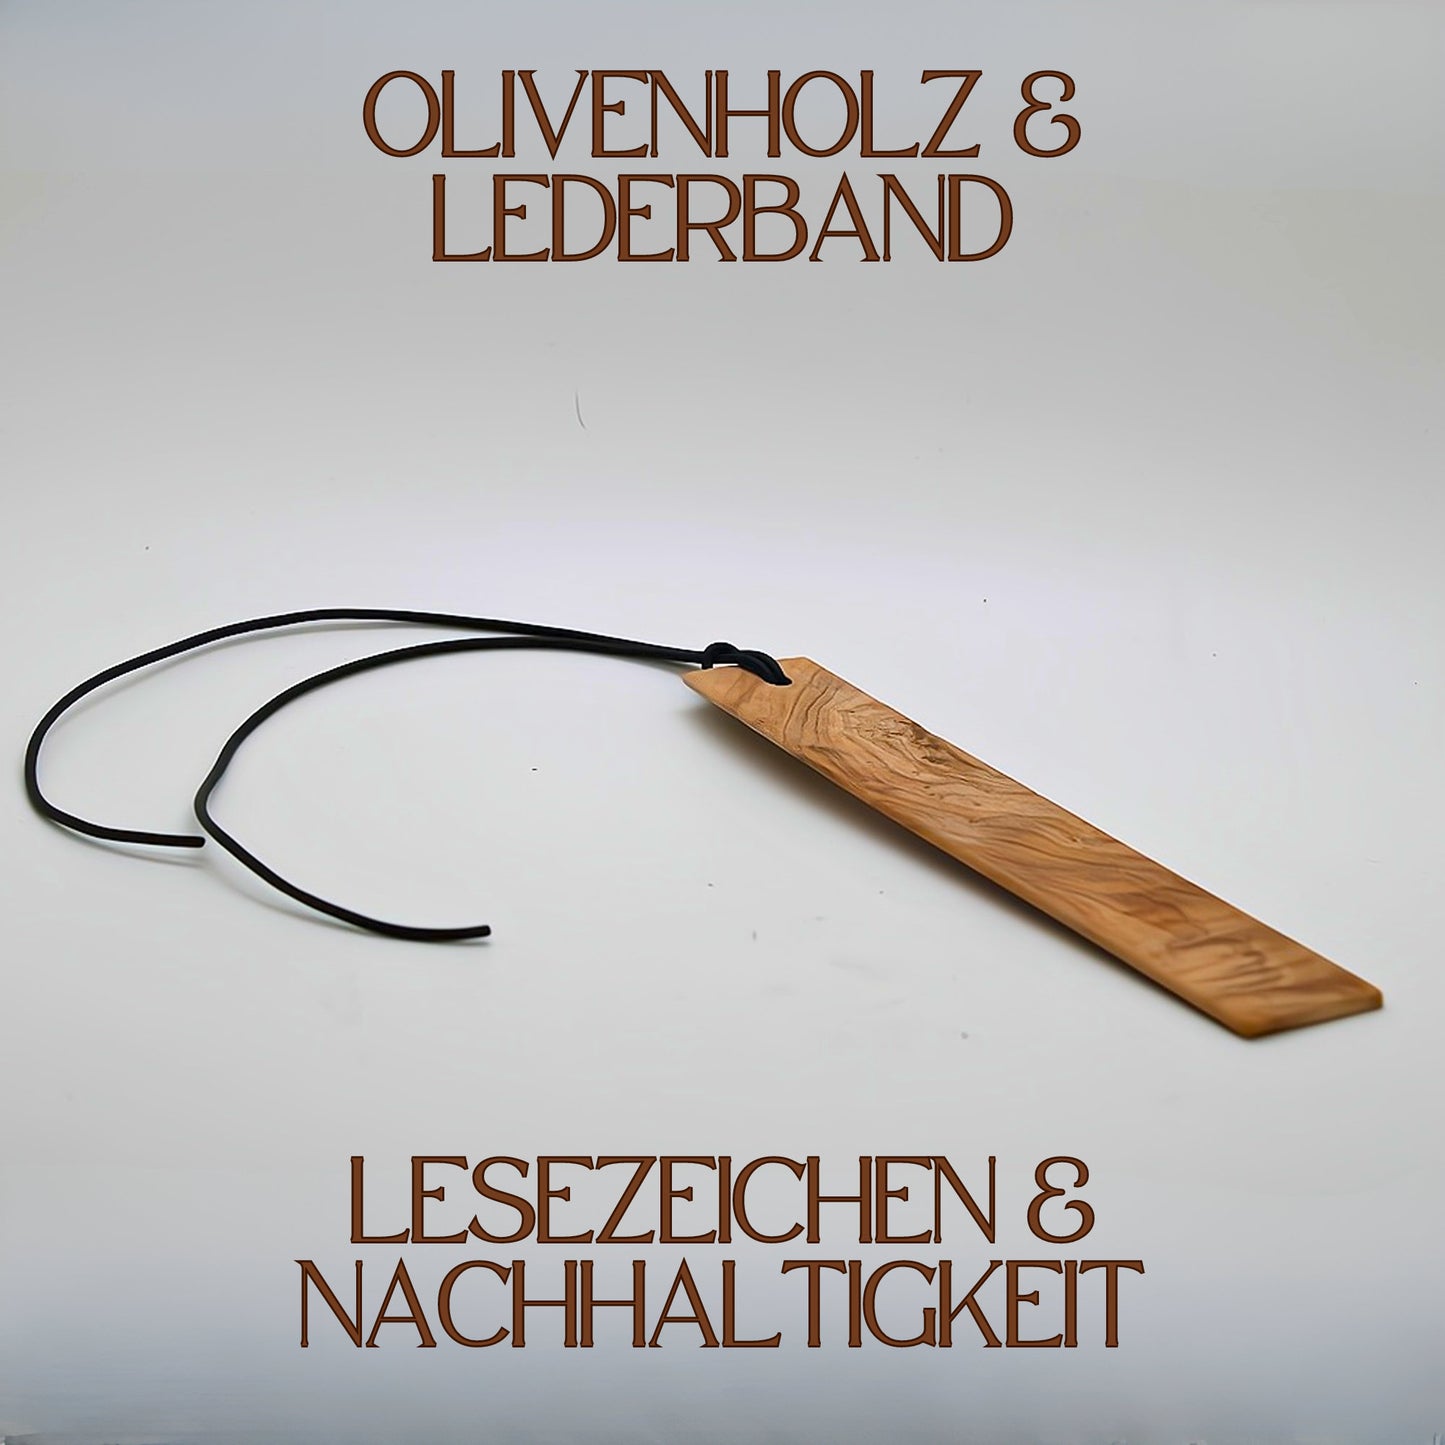 Exklusive Lesezeichen aus Olivenholz - Einzigartige Akzente für deine Lesestunden aus Holz